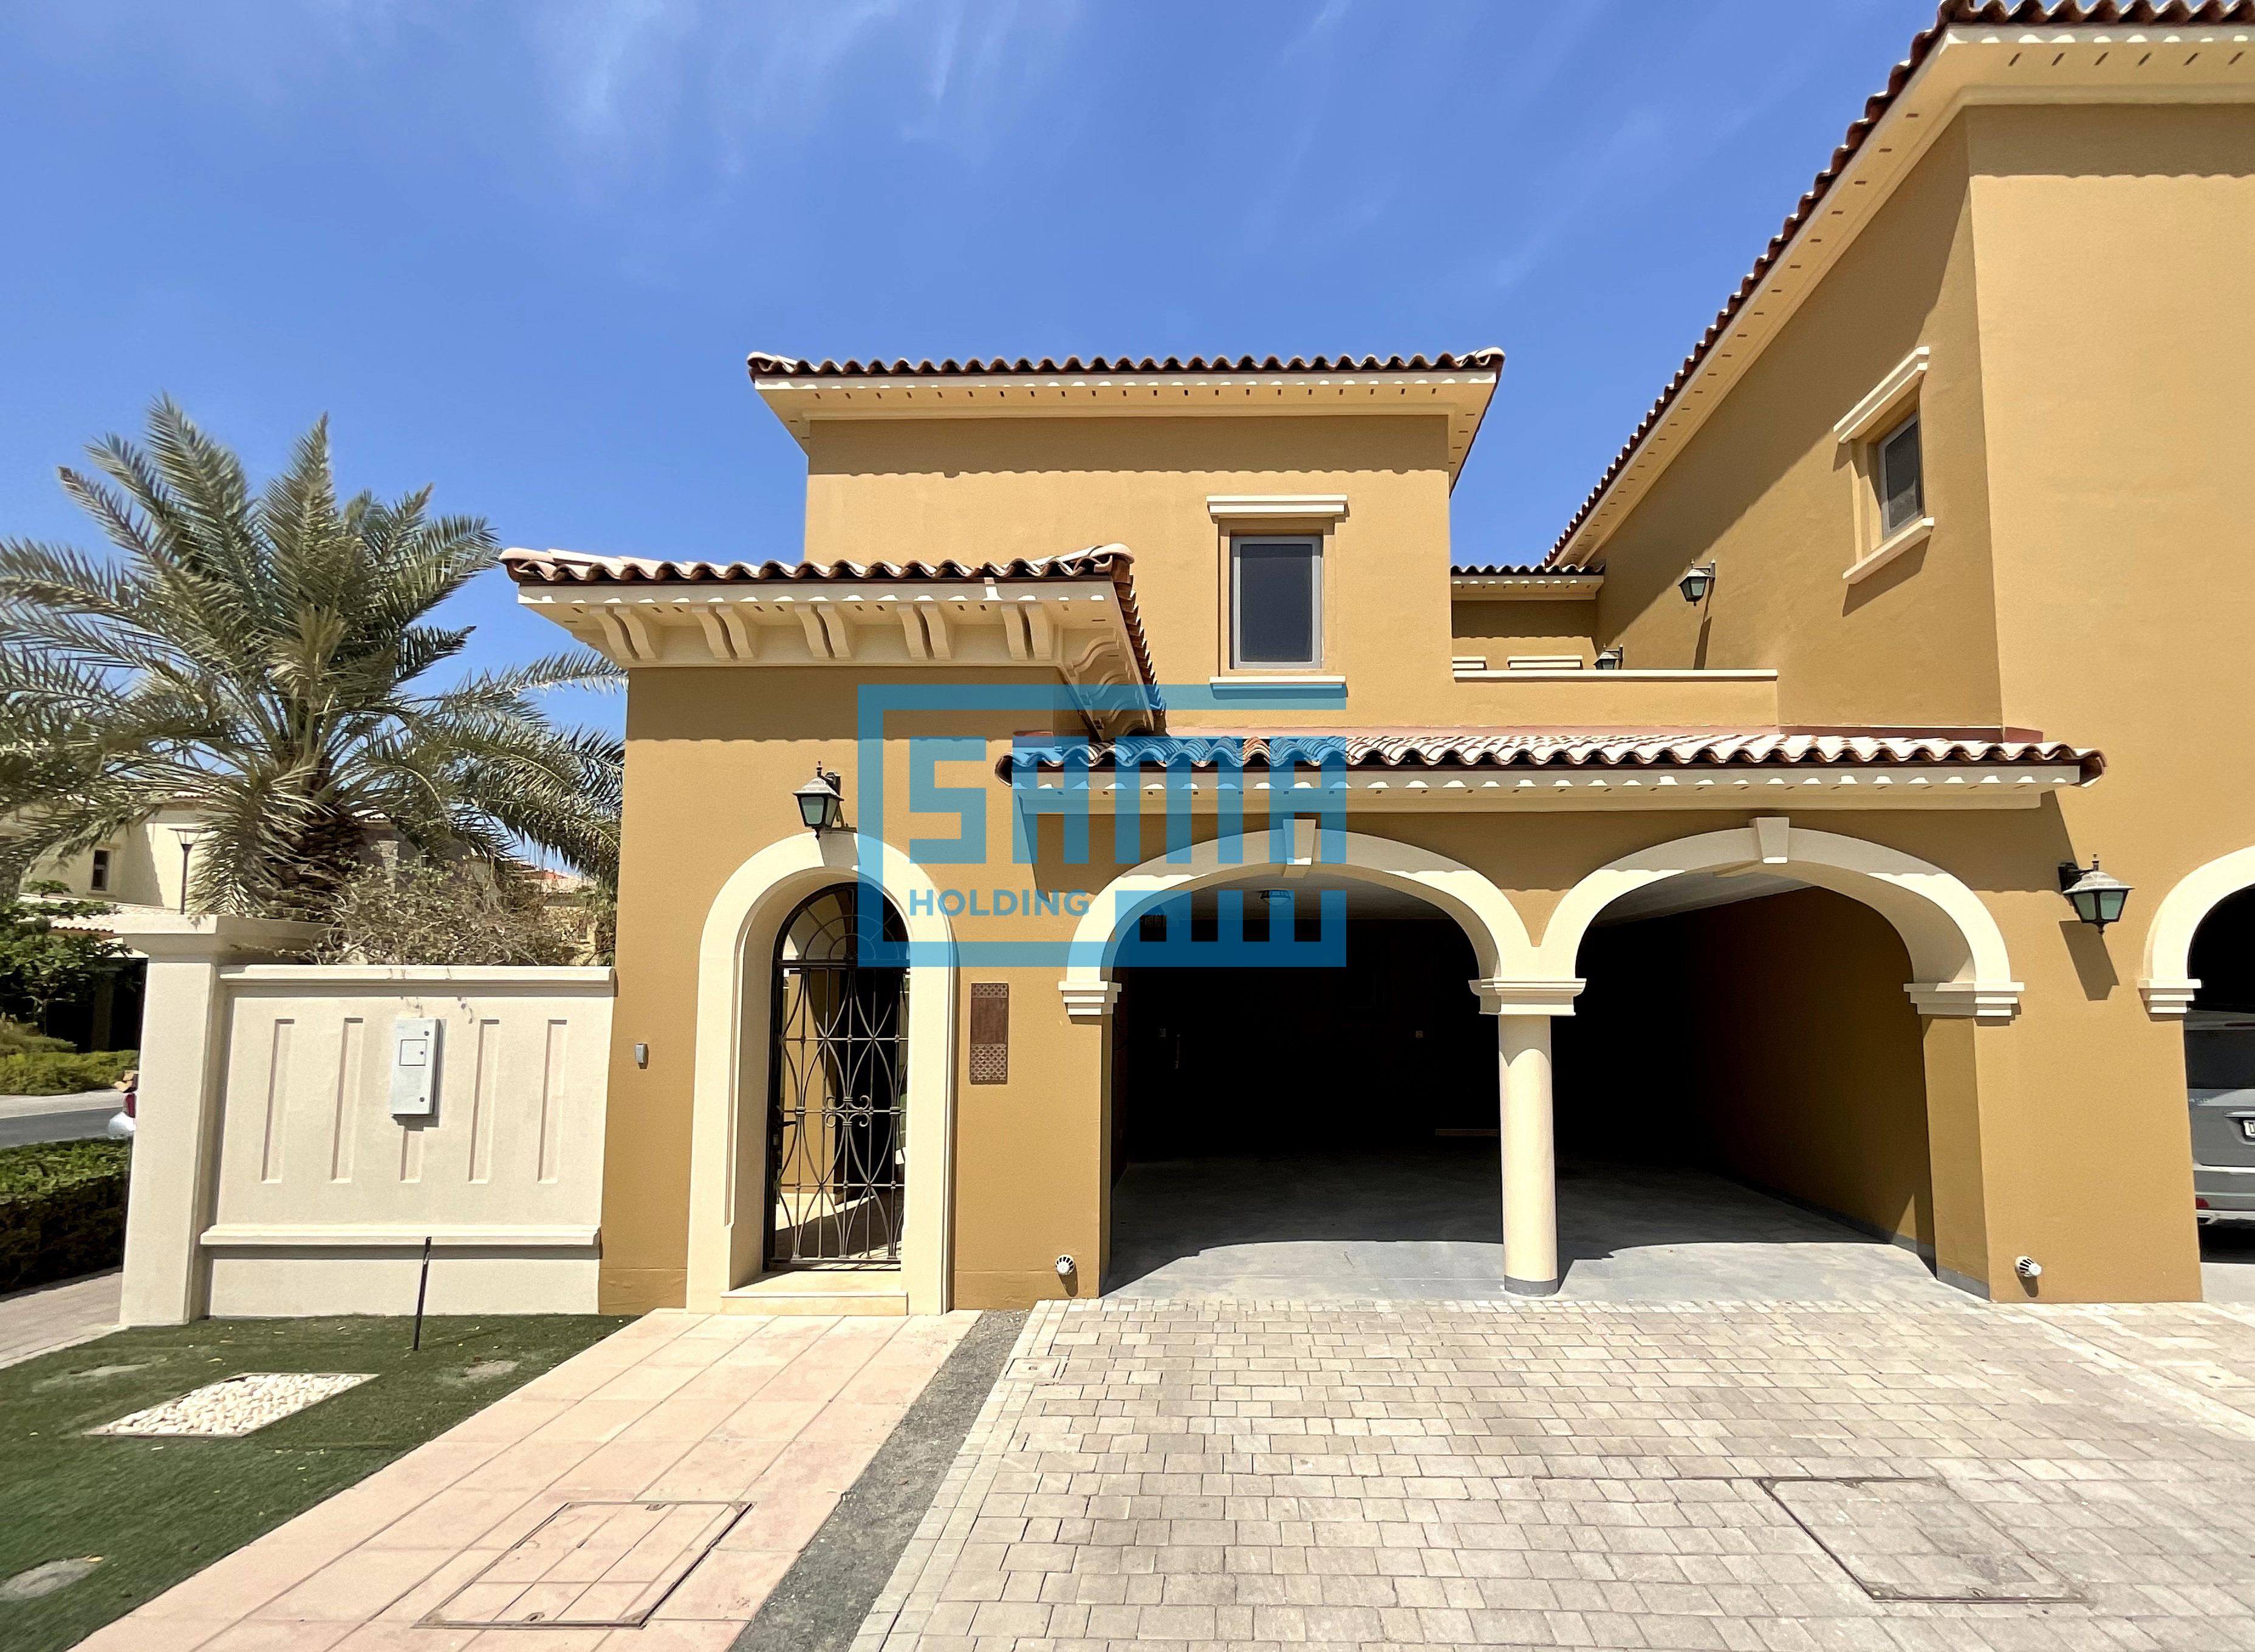 3 Bedroom Townhouse for Sale located in Abu Dhabi, Saadiyat Beach Villas